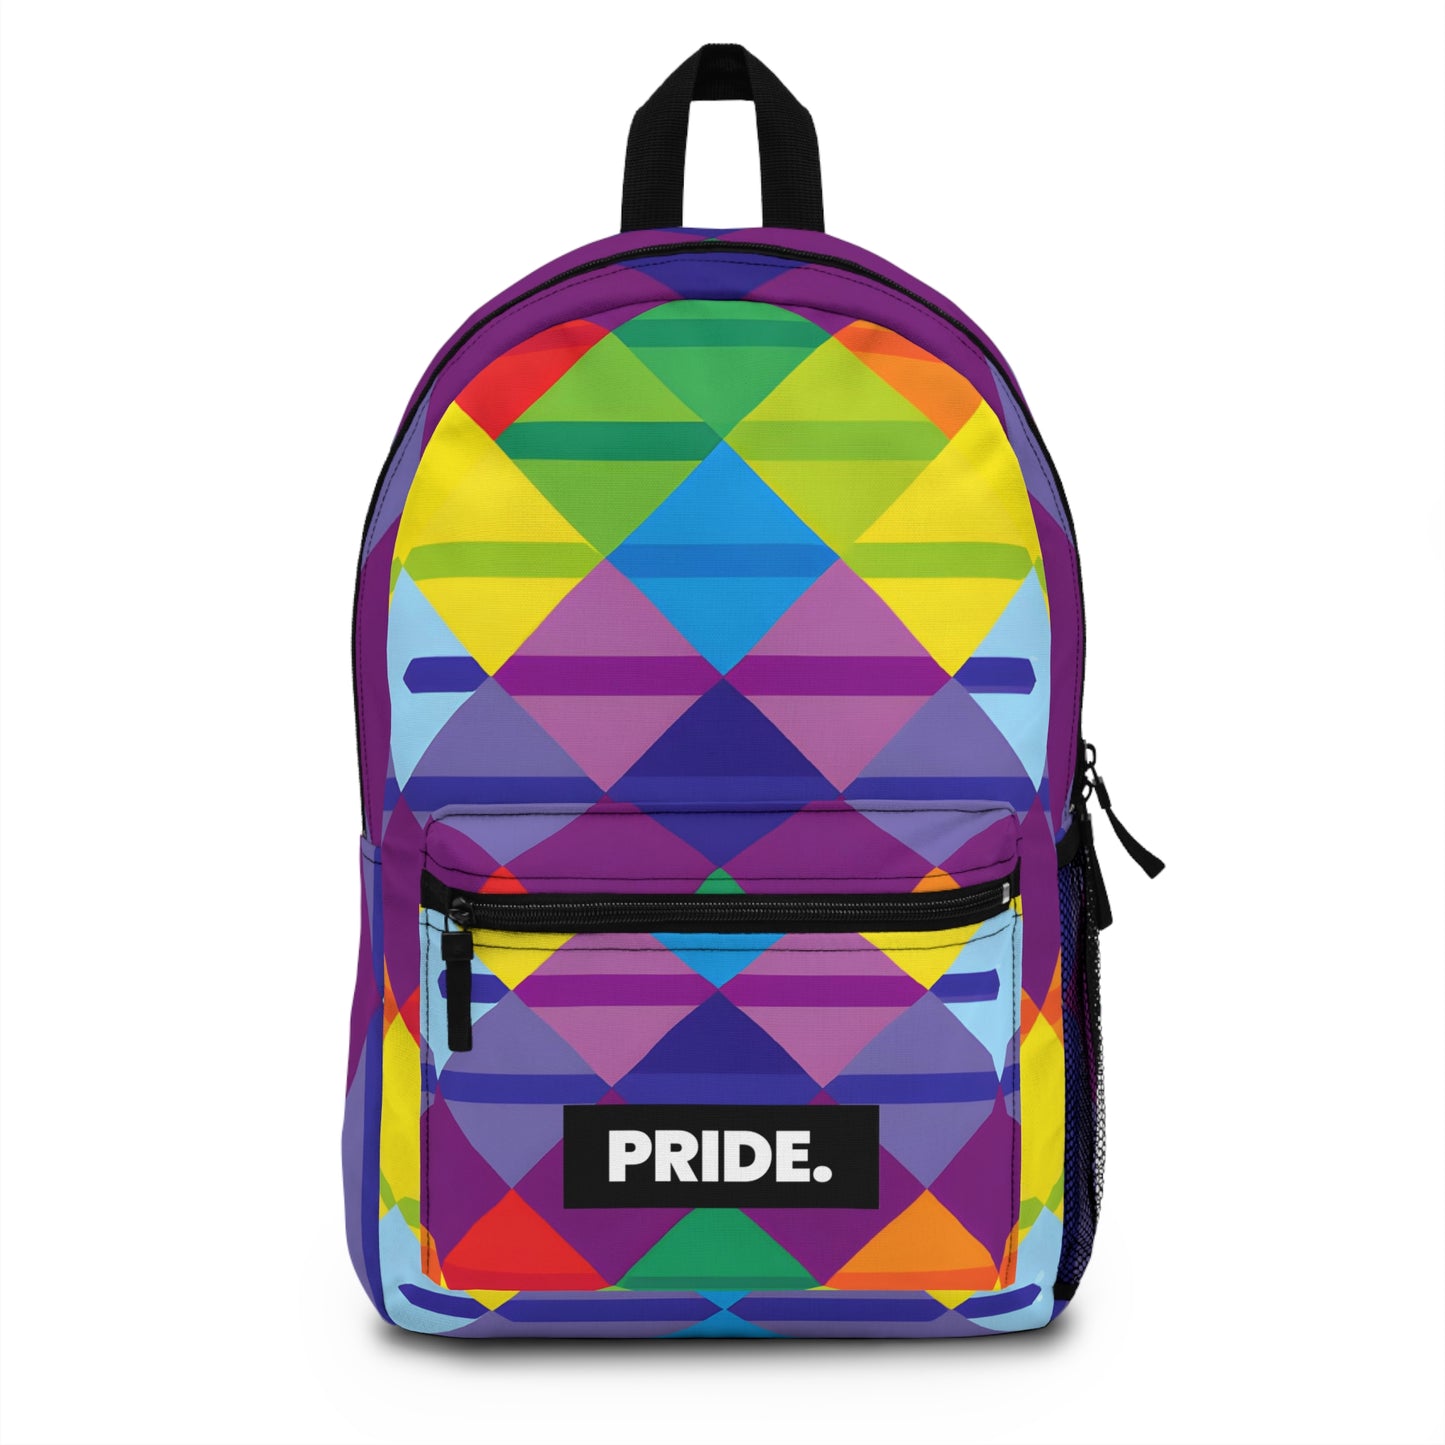 MissTronic - Hustler Pride Backpack